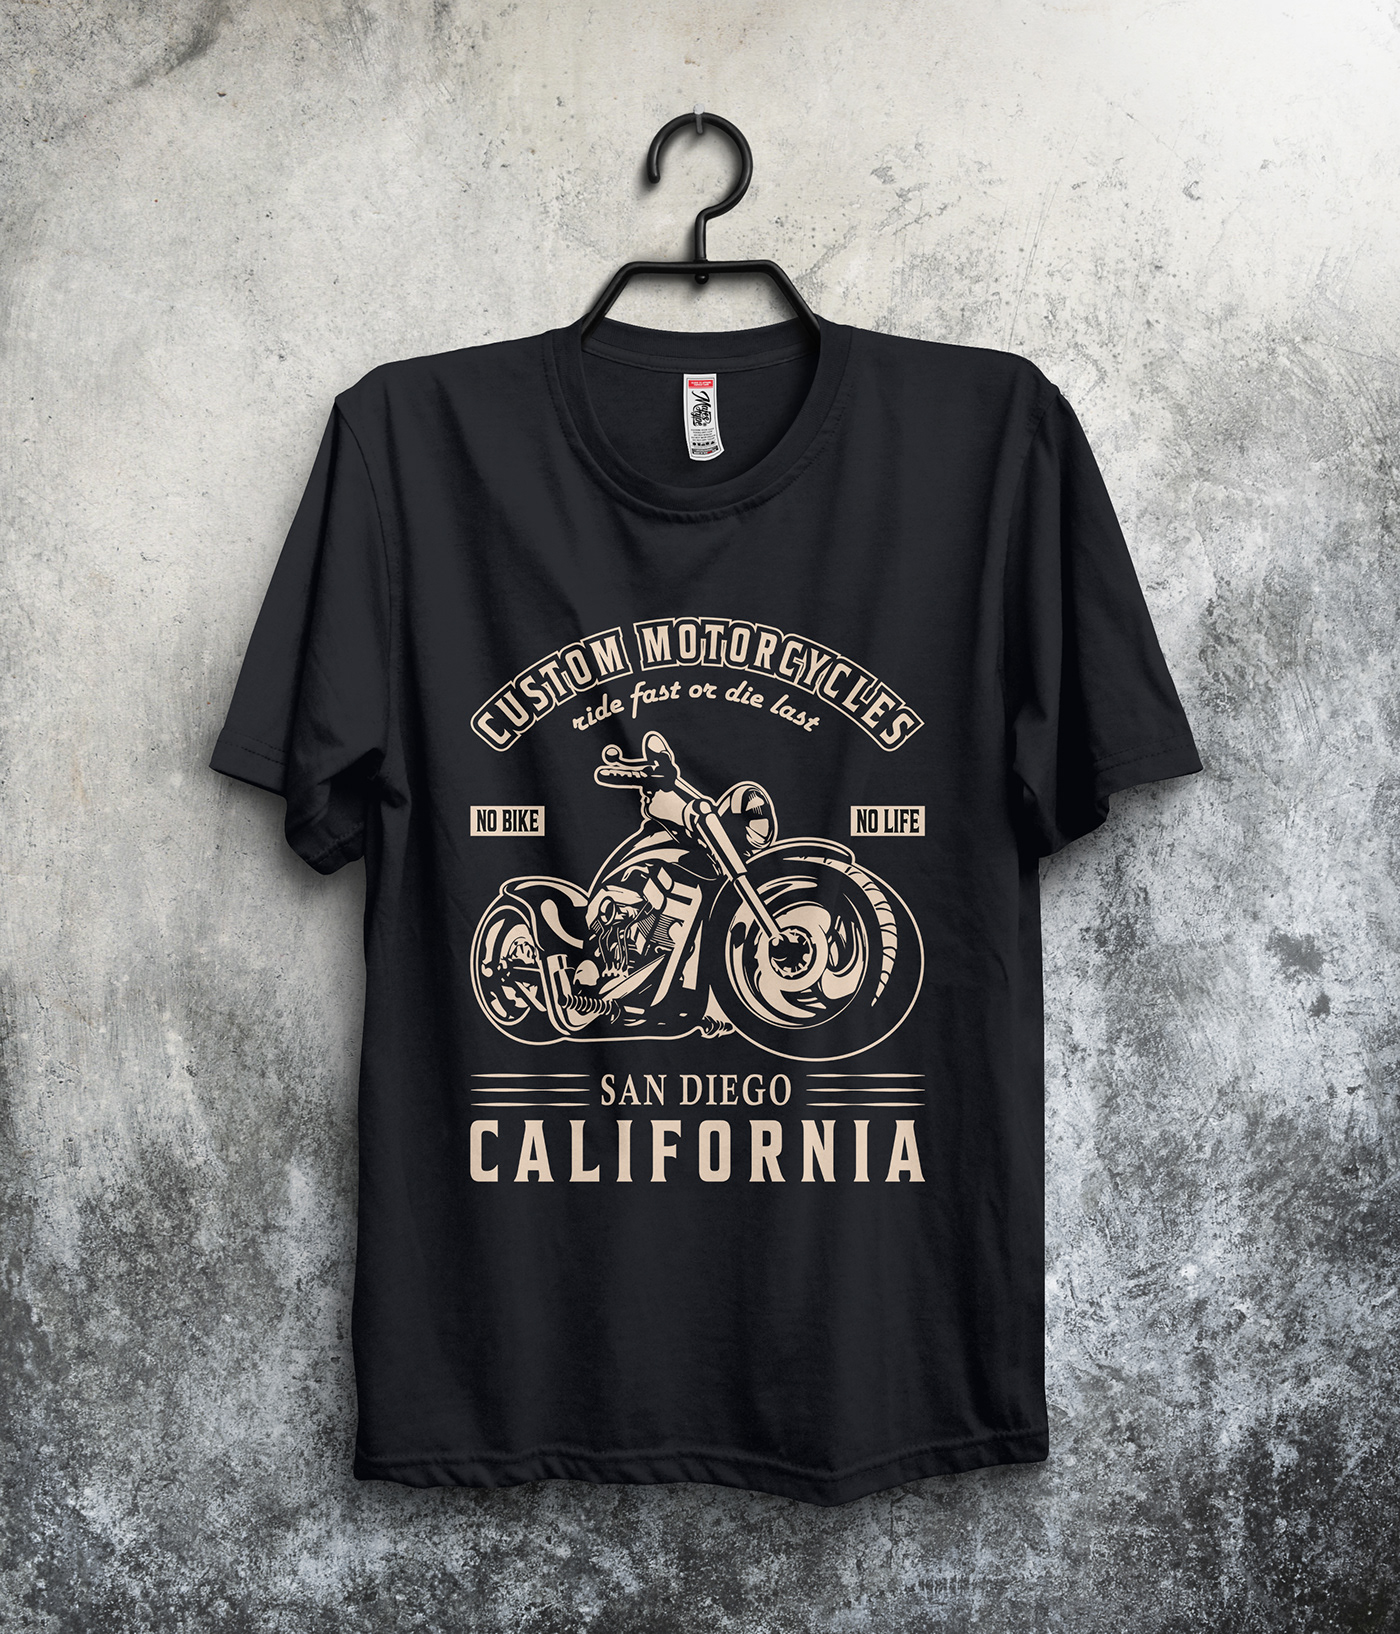 Bicycle Bike bikes Custom Cycling motorbike design motorcycle motorcycle t-shirt design motorcycles ride